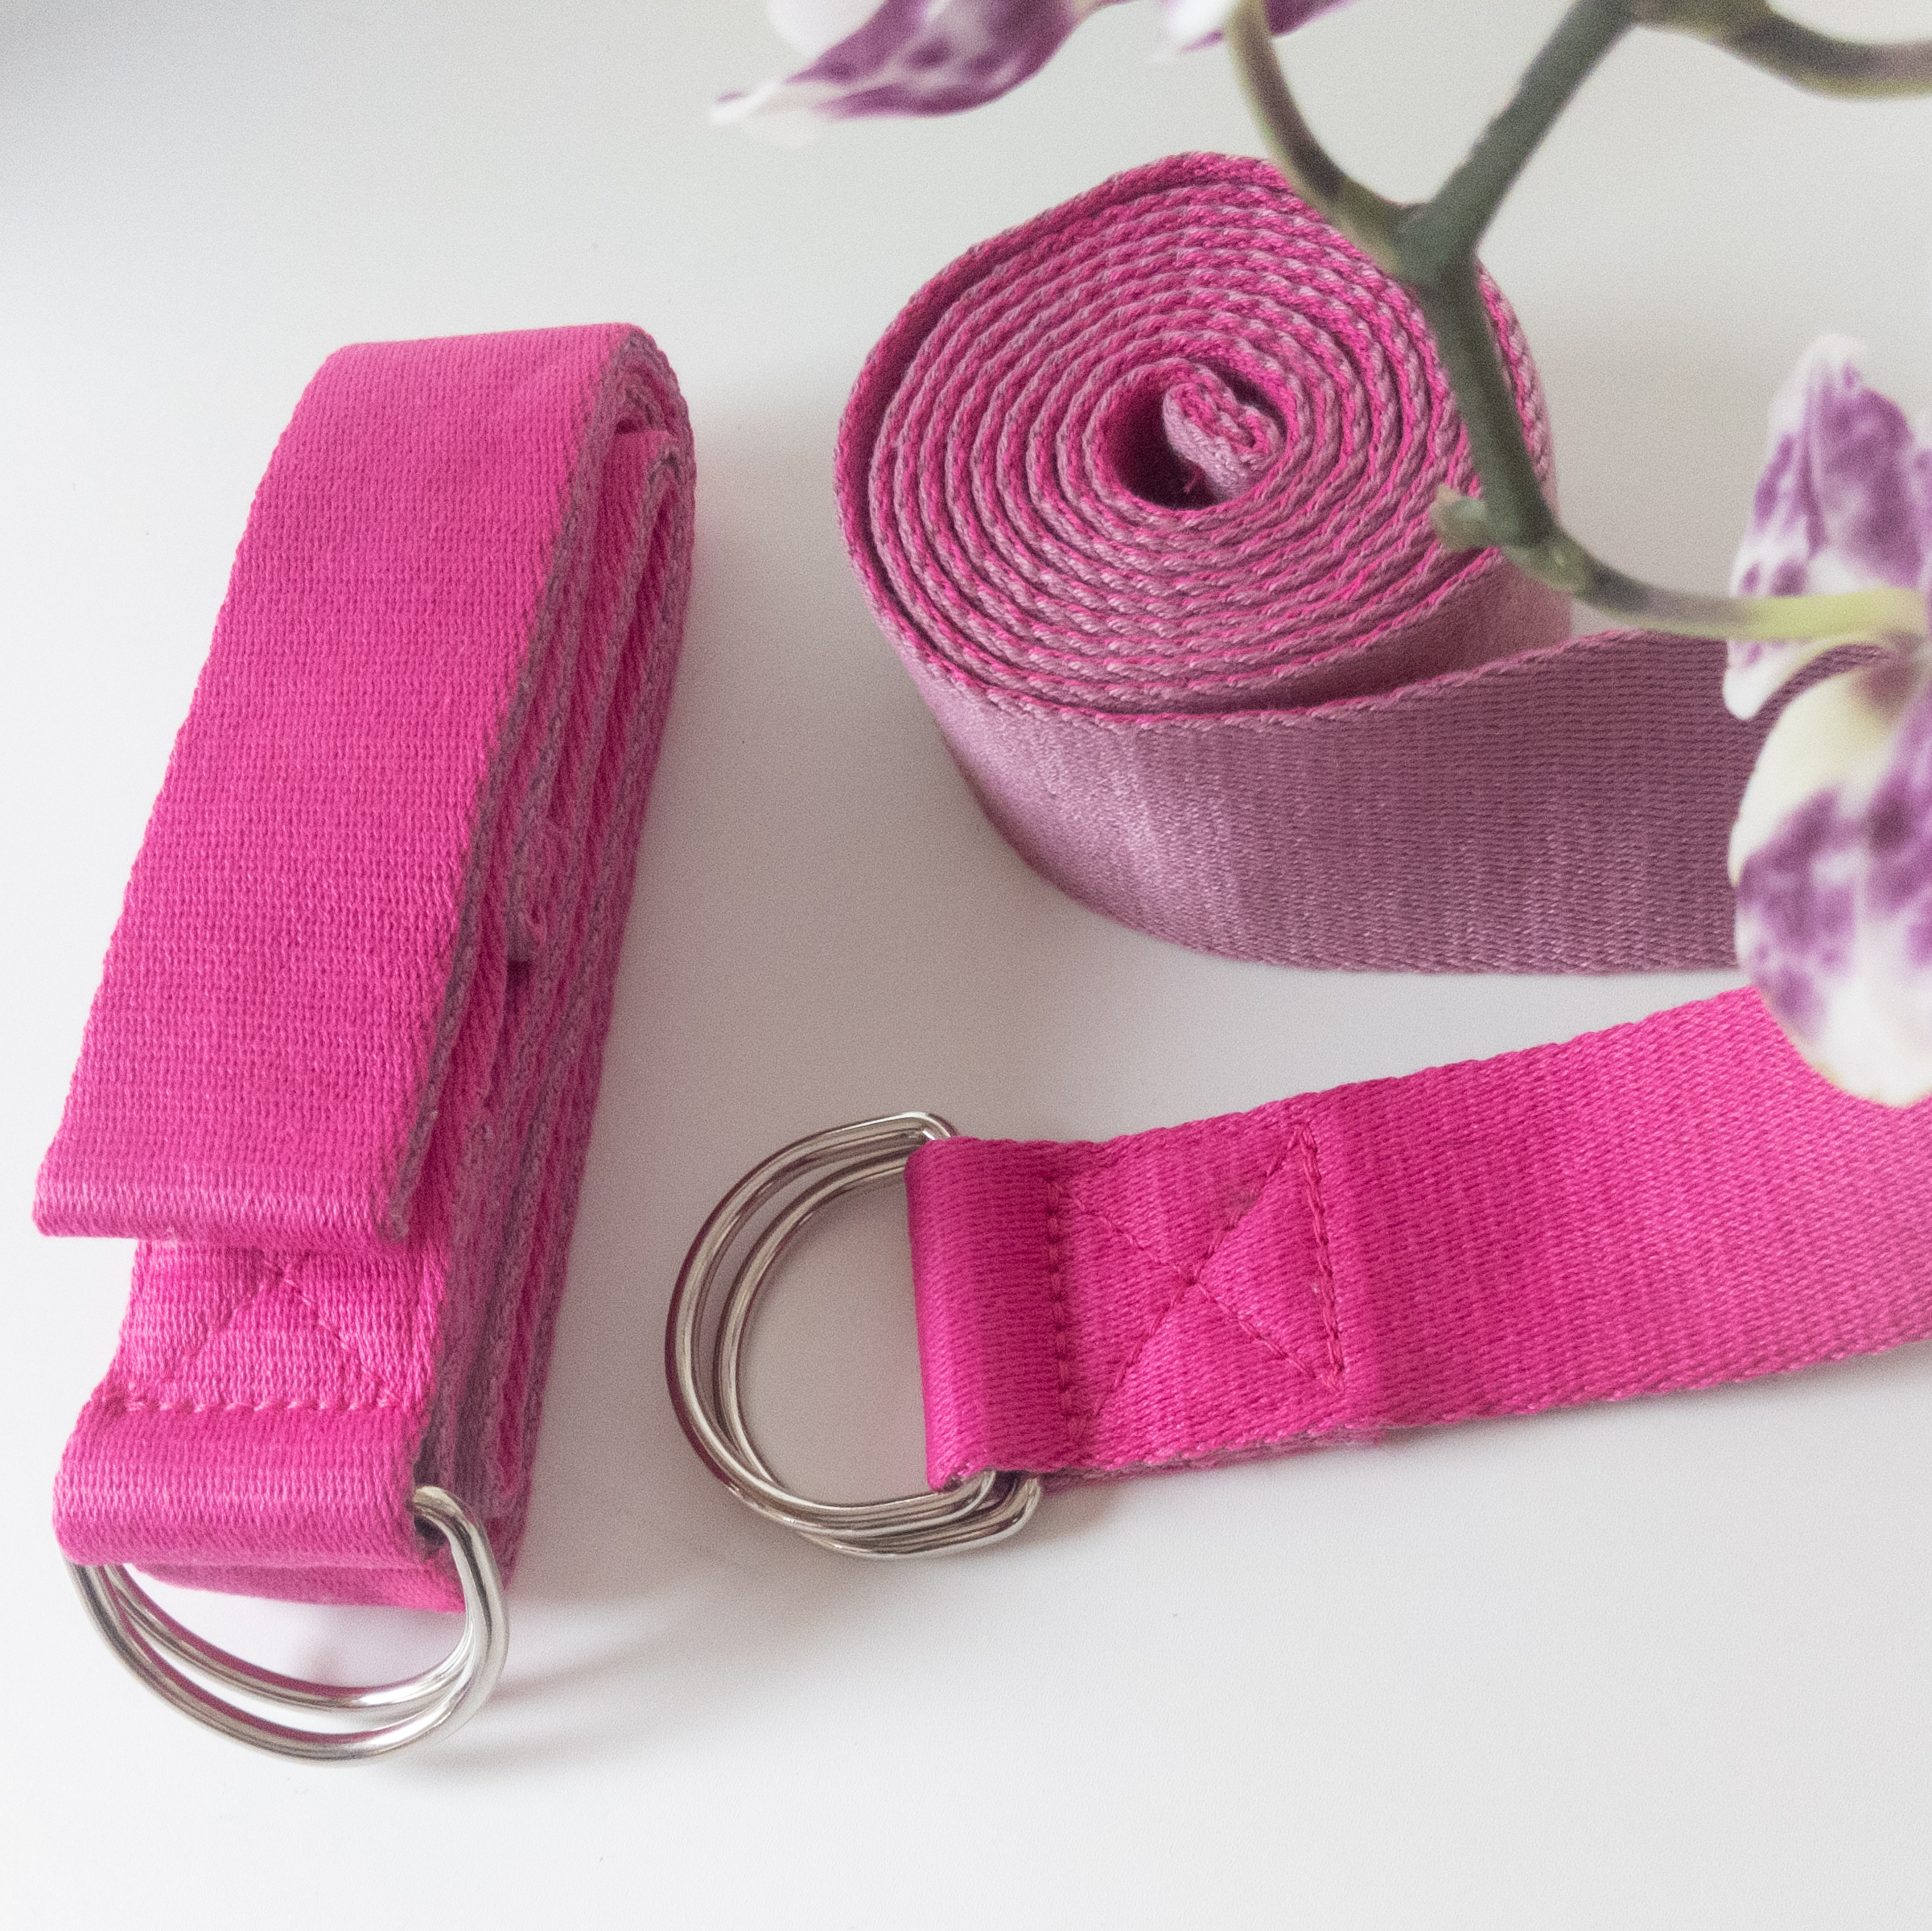 Gaiam Yoga Strap Cotton 6 Feet Purple Box - Each - Tom Thumb